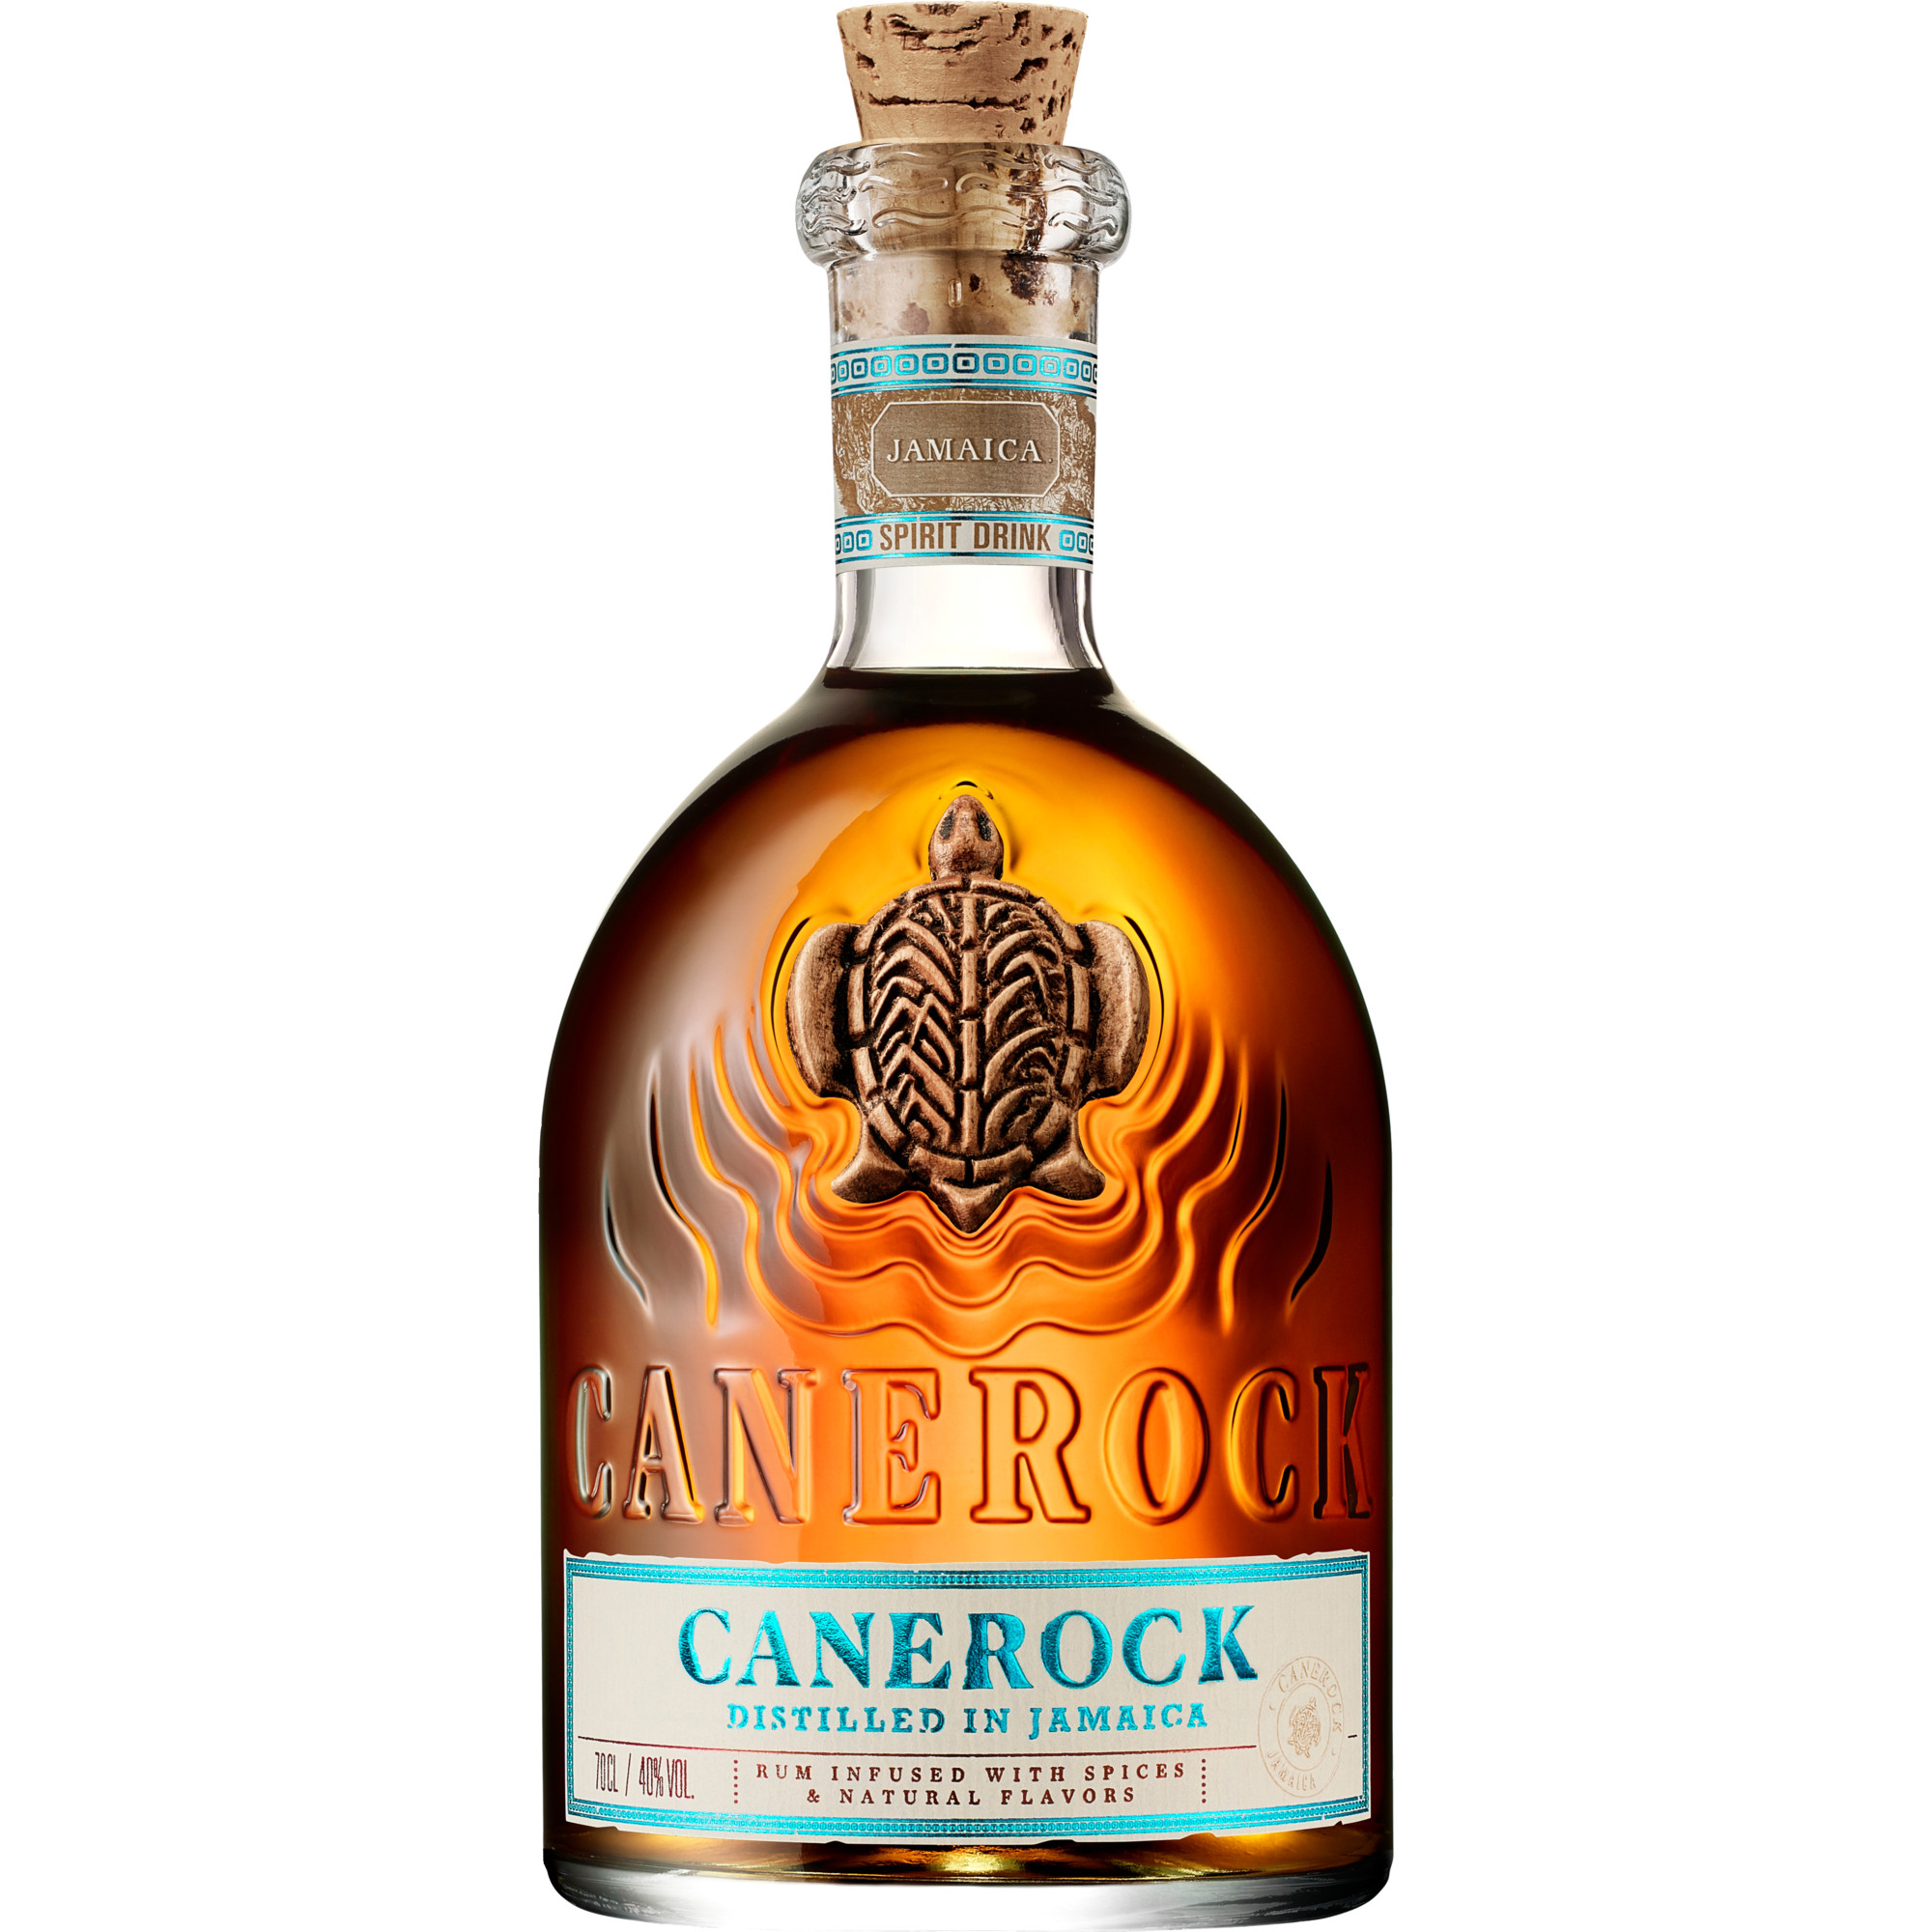 Canerock Jamaican Spiced Rum, Jamaica, 0,7 L, 40% Vol., Spirituosen Ferrand Deutschland GmbH, Sundernallee 75, 53636 Iserlohn, Deutschland Hawesko DE